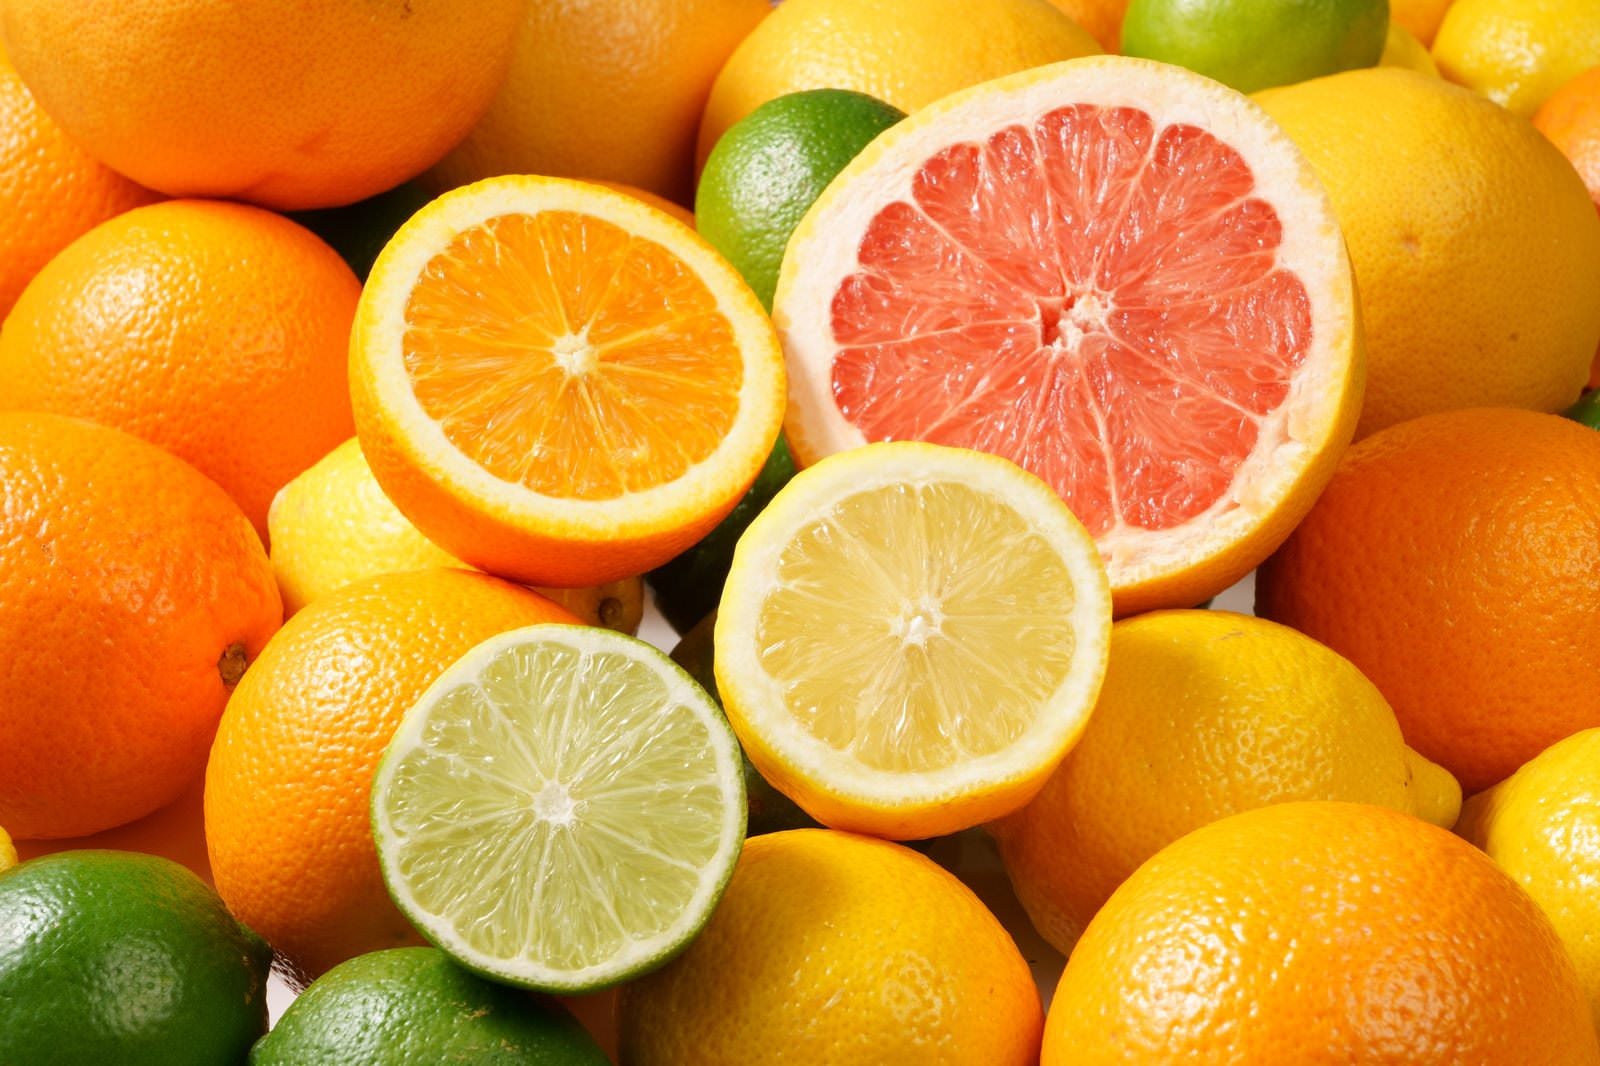 「ハーフカットした柑橘系フルーツの盛り合わせ」の写真